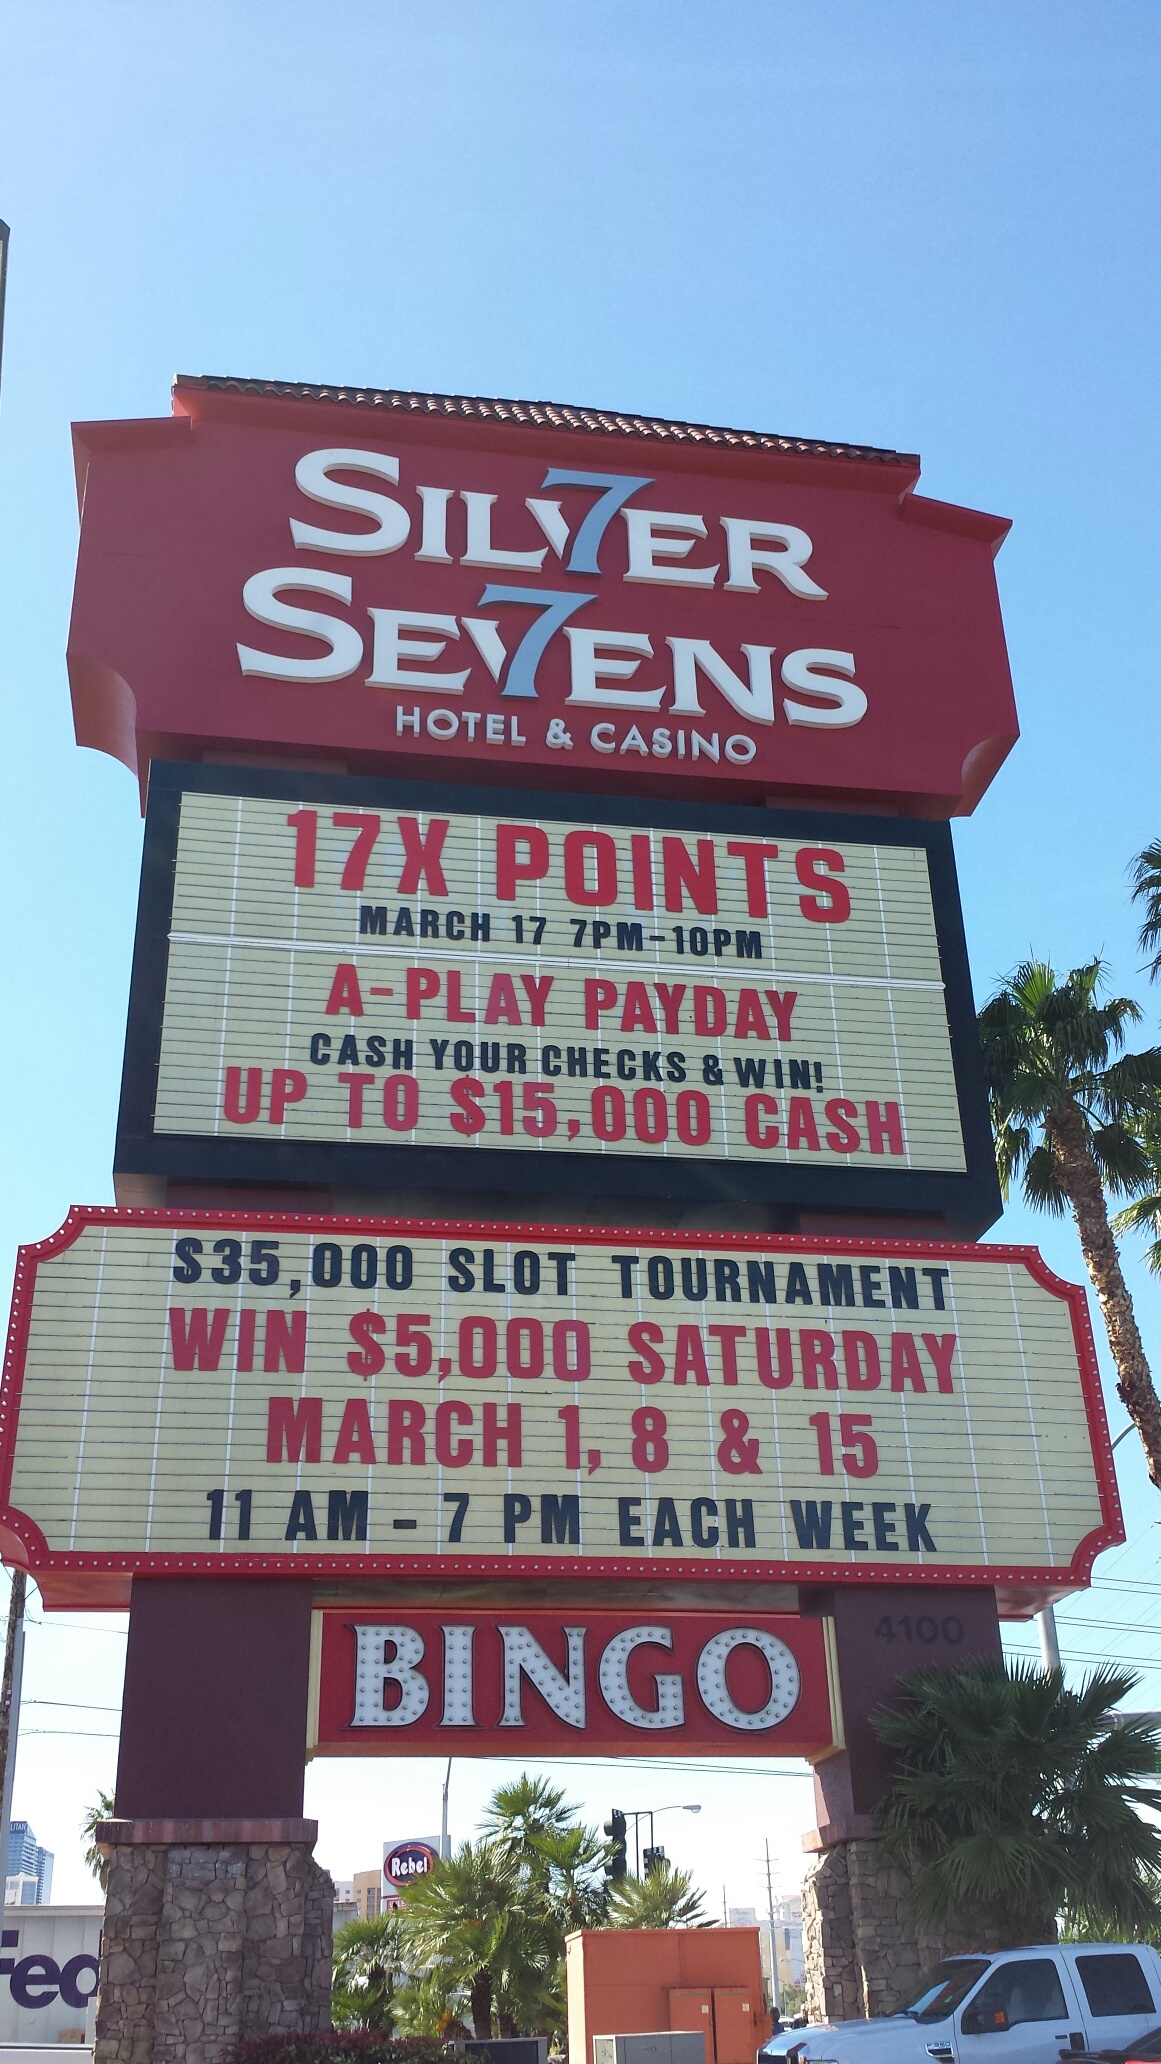 silver 7 casino